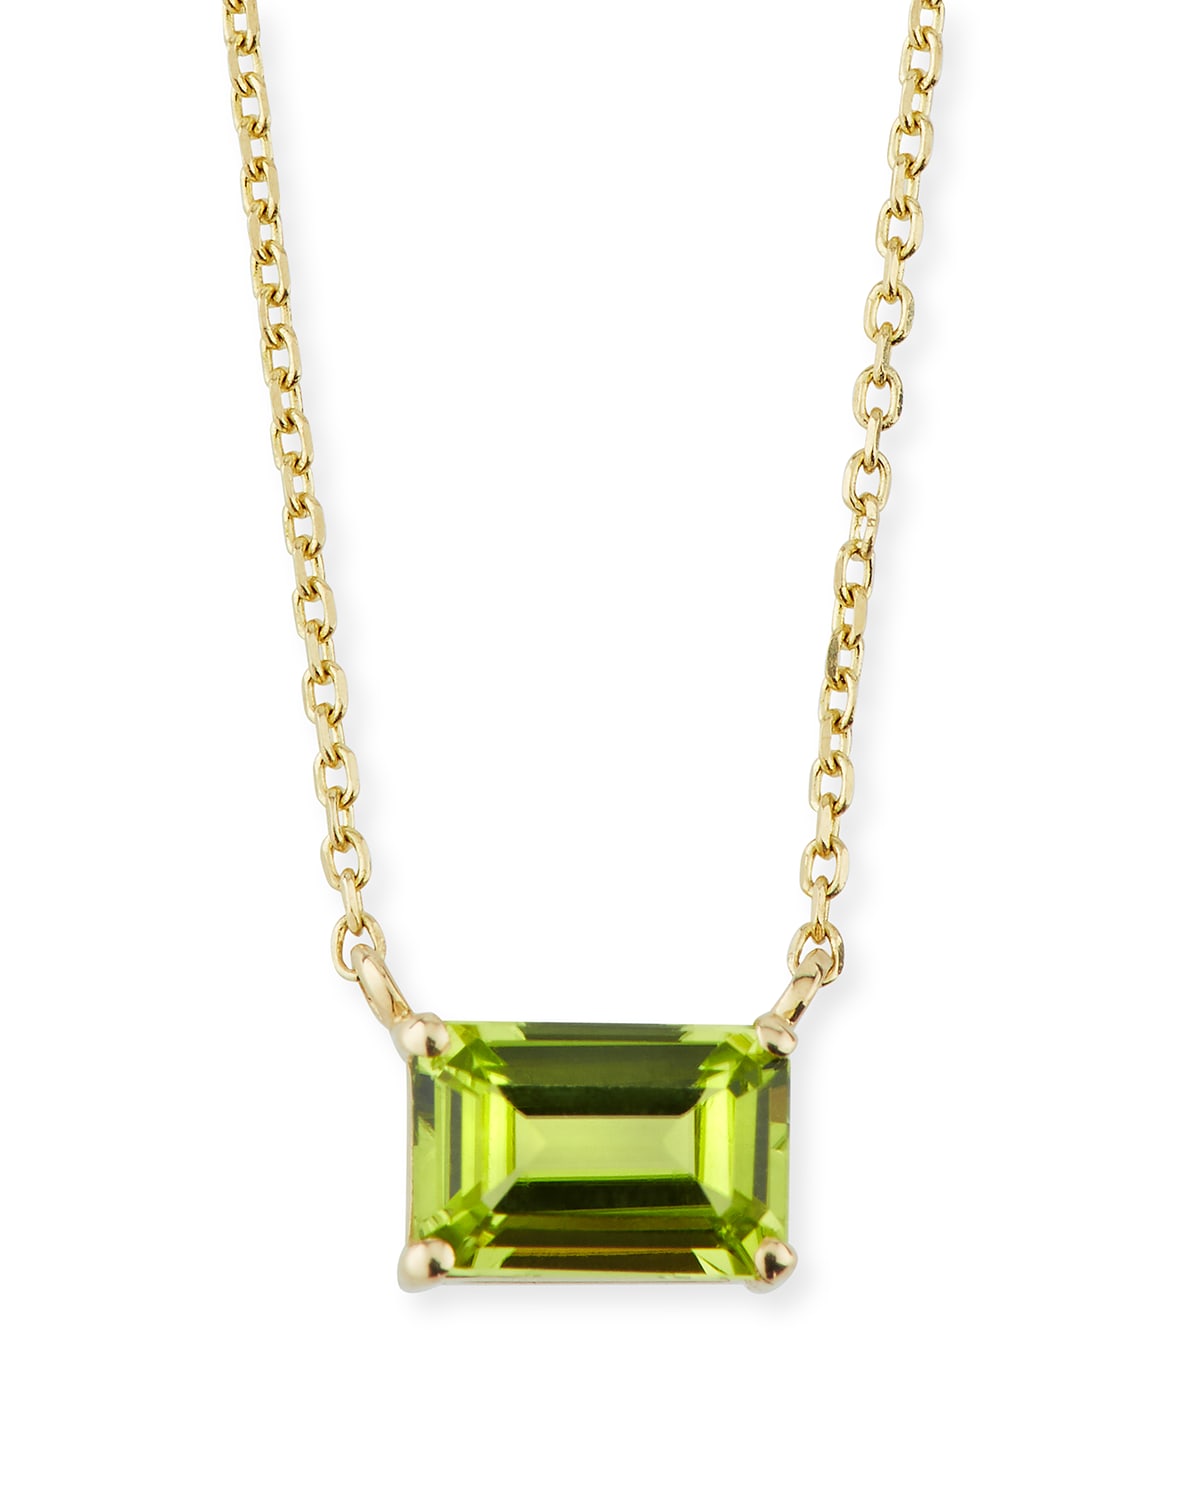 KALAN by Suzanne Kalan 14K Yellow Gold Amalfi Emerald Cut Necklace